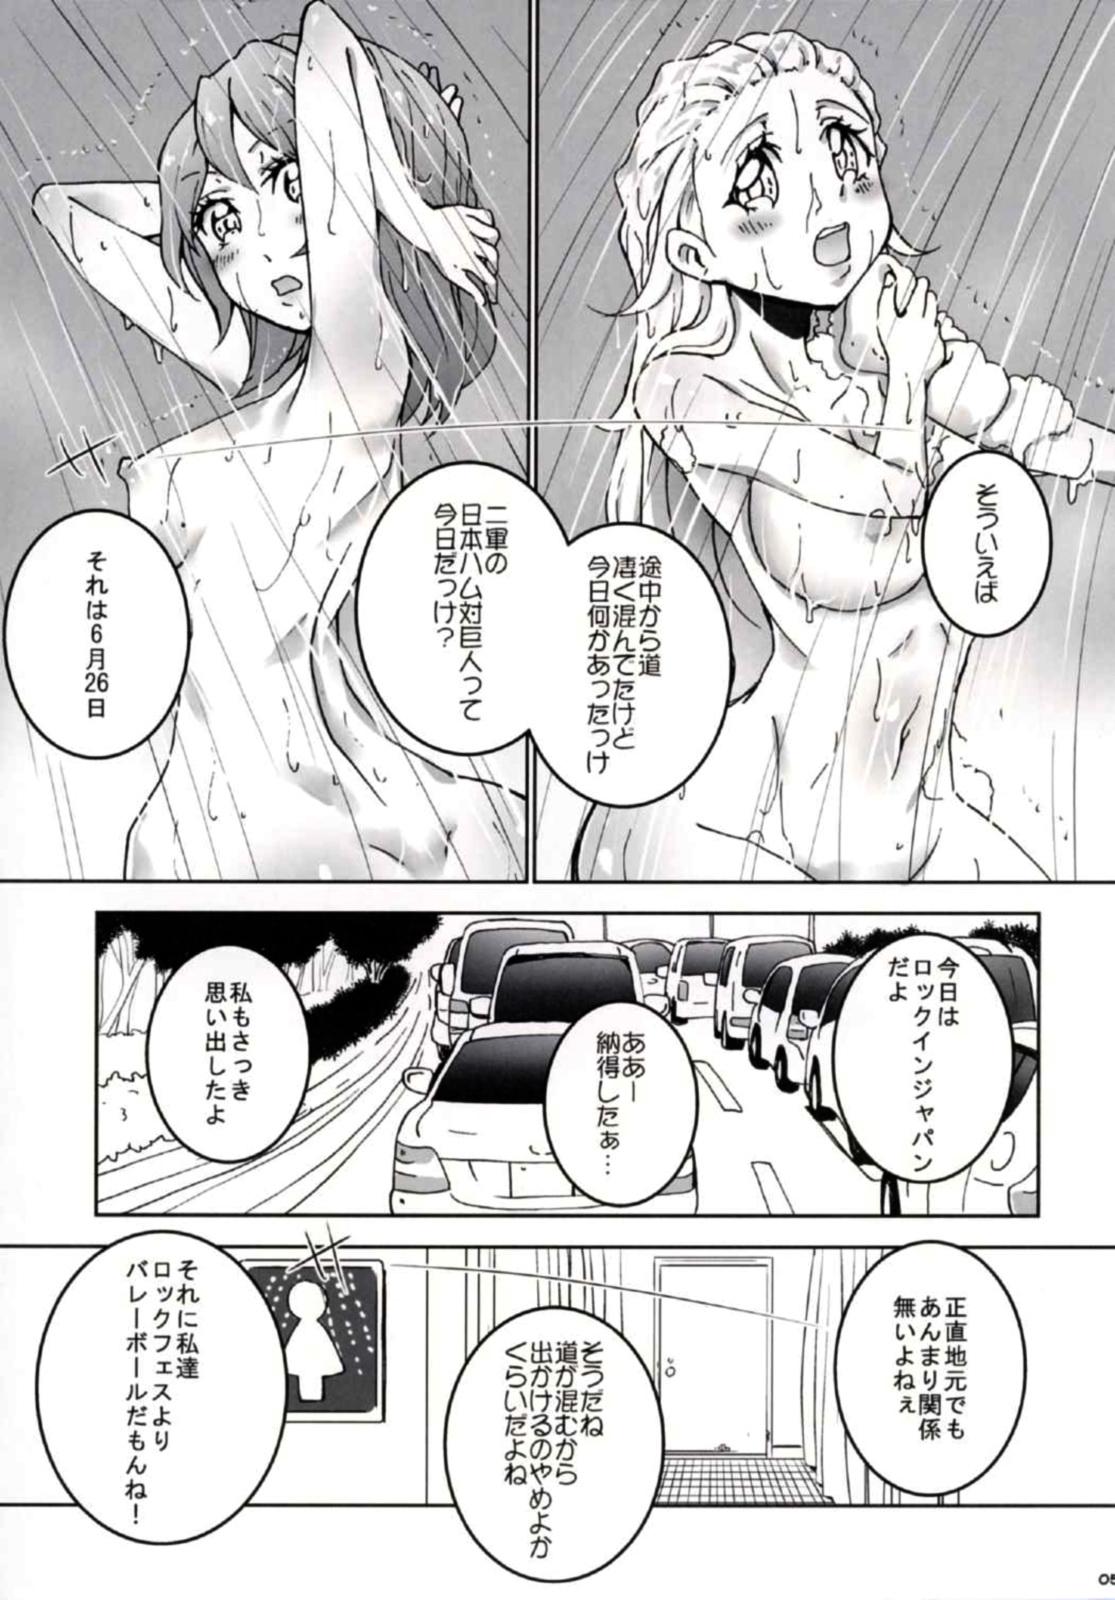 Dirty (C90) [Ai no Kura (Takahagi Kemono)] 8-gatsu 14-ka no Tonari no Shi (Girls und Panzer) - Girls und panzer Gay Pissing - Page 6